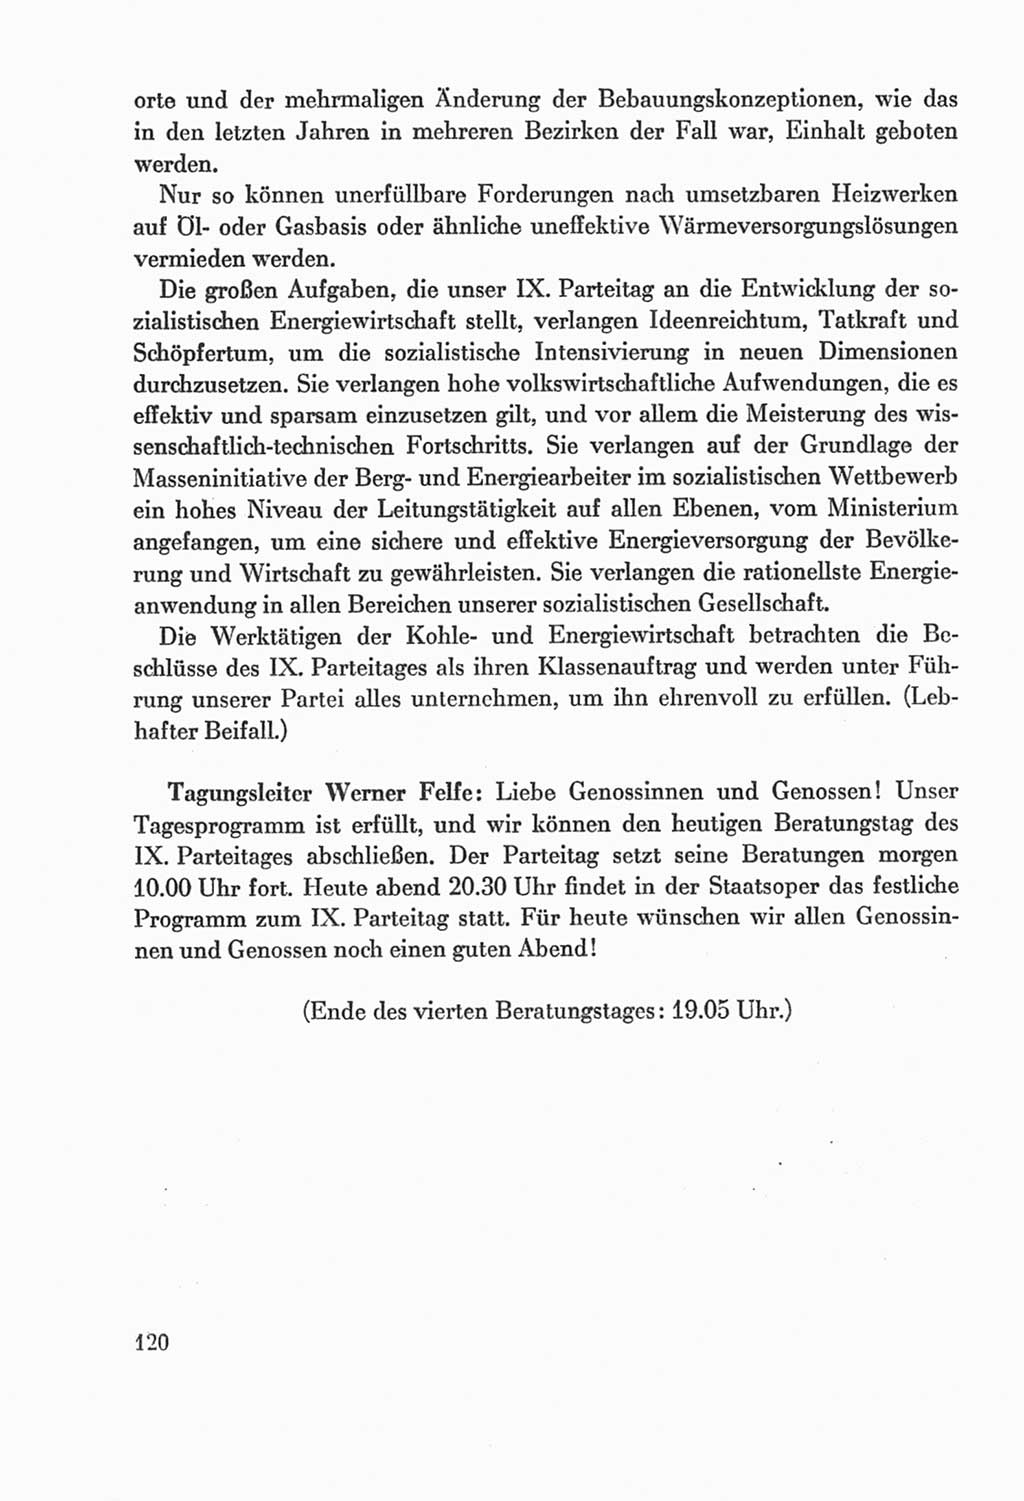 Protokoll der Verhandlungen des Ⅸ. Parteitages der Sozialistischen Einheitspartei Deutschlands (SED) [Deutsche Demokratische Republik (DDR)] 1976, Band 2, Seite 120 (Prot. Verh. Ⅸ. PT SED DDR 1976, Bd. 2, S. 120)